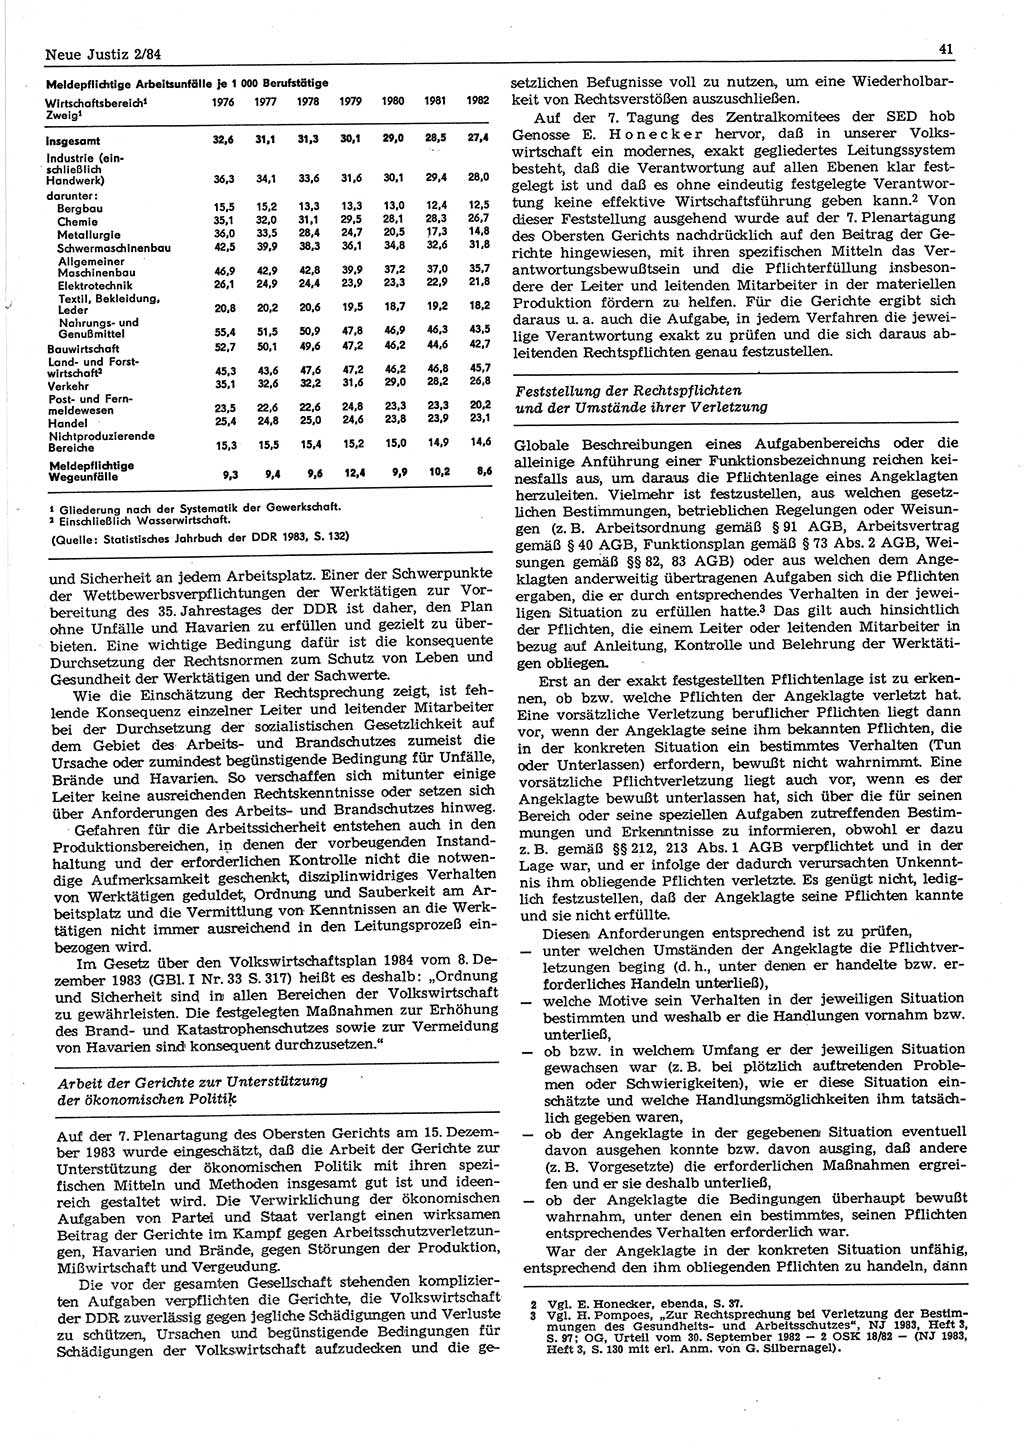 Neue Justiz (NJ), Zeitschrift für sozialistisches Recht und Gesetzlichkeit [Deutsche Demokratische Republik (DDR)], 38. Jahrgang 1984, Seite 41 (NJ DDR 1984, S. 41)